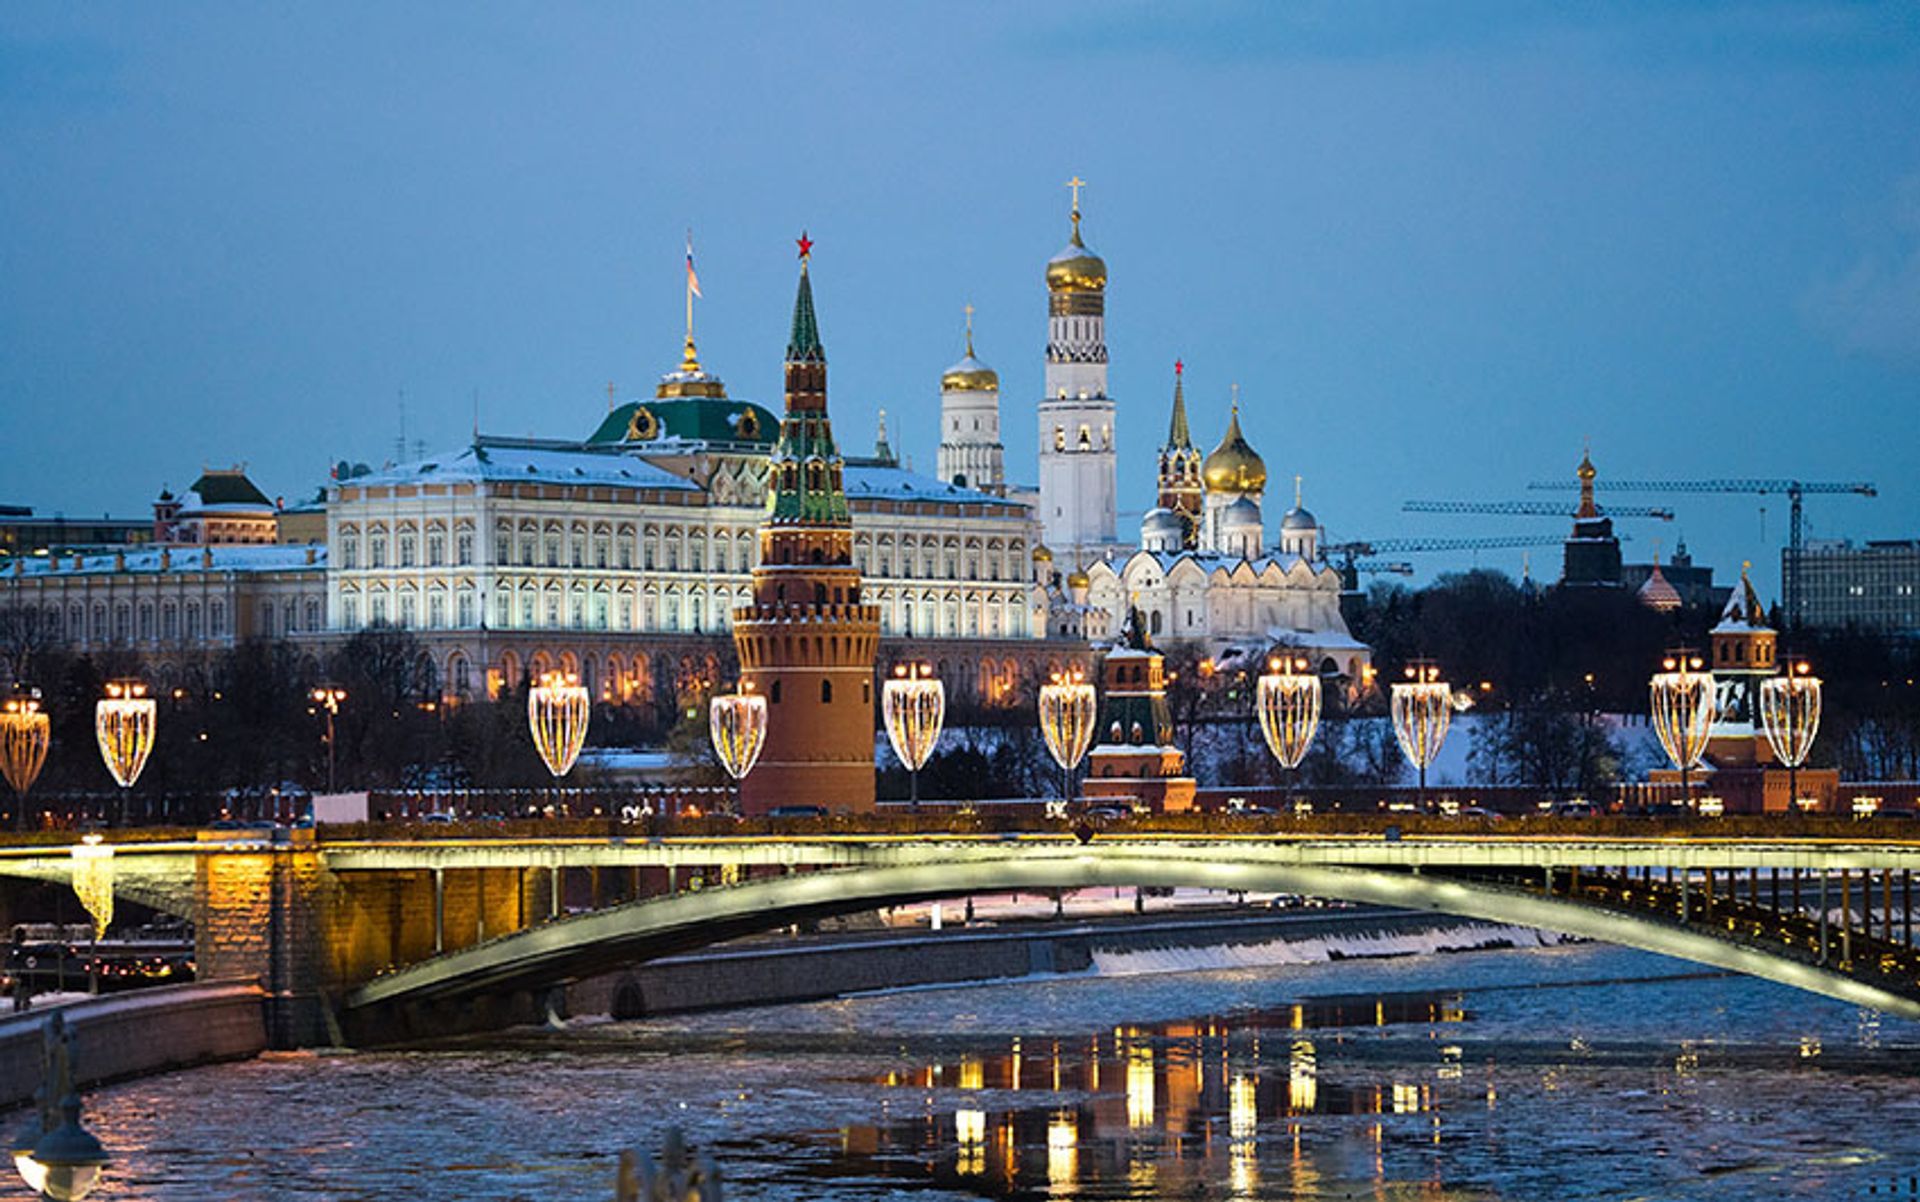 במוסקבה, מוזיאונים ותיאטראות יהיו פתוחים בתפוסה מוגבלת במהלך הימים "ללא עבודה"

© אלכס זרובי